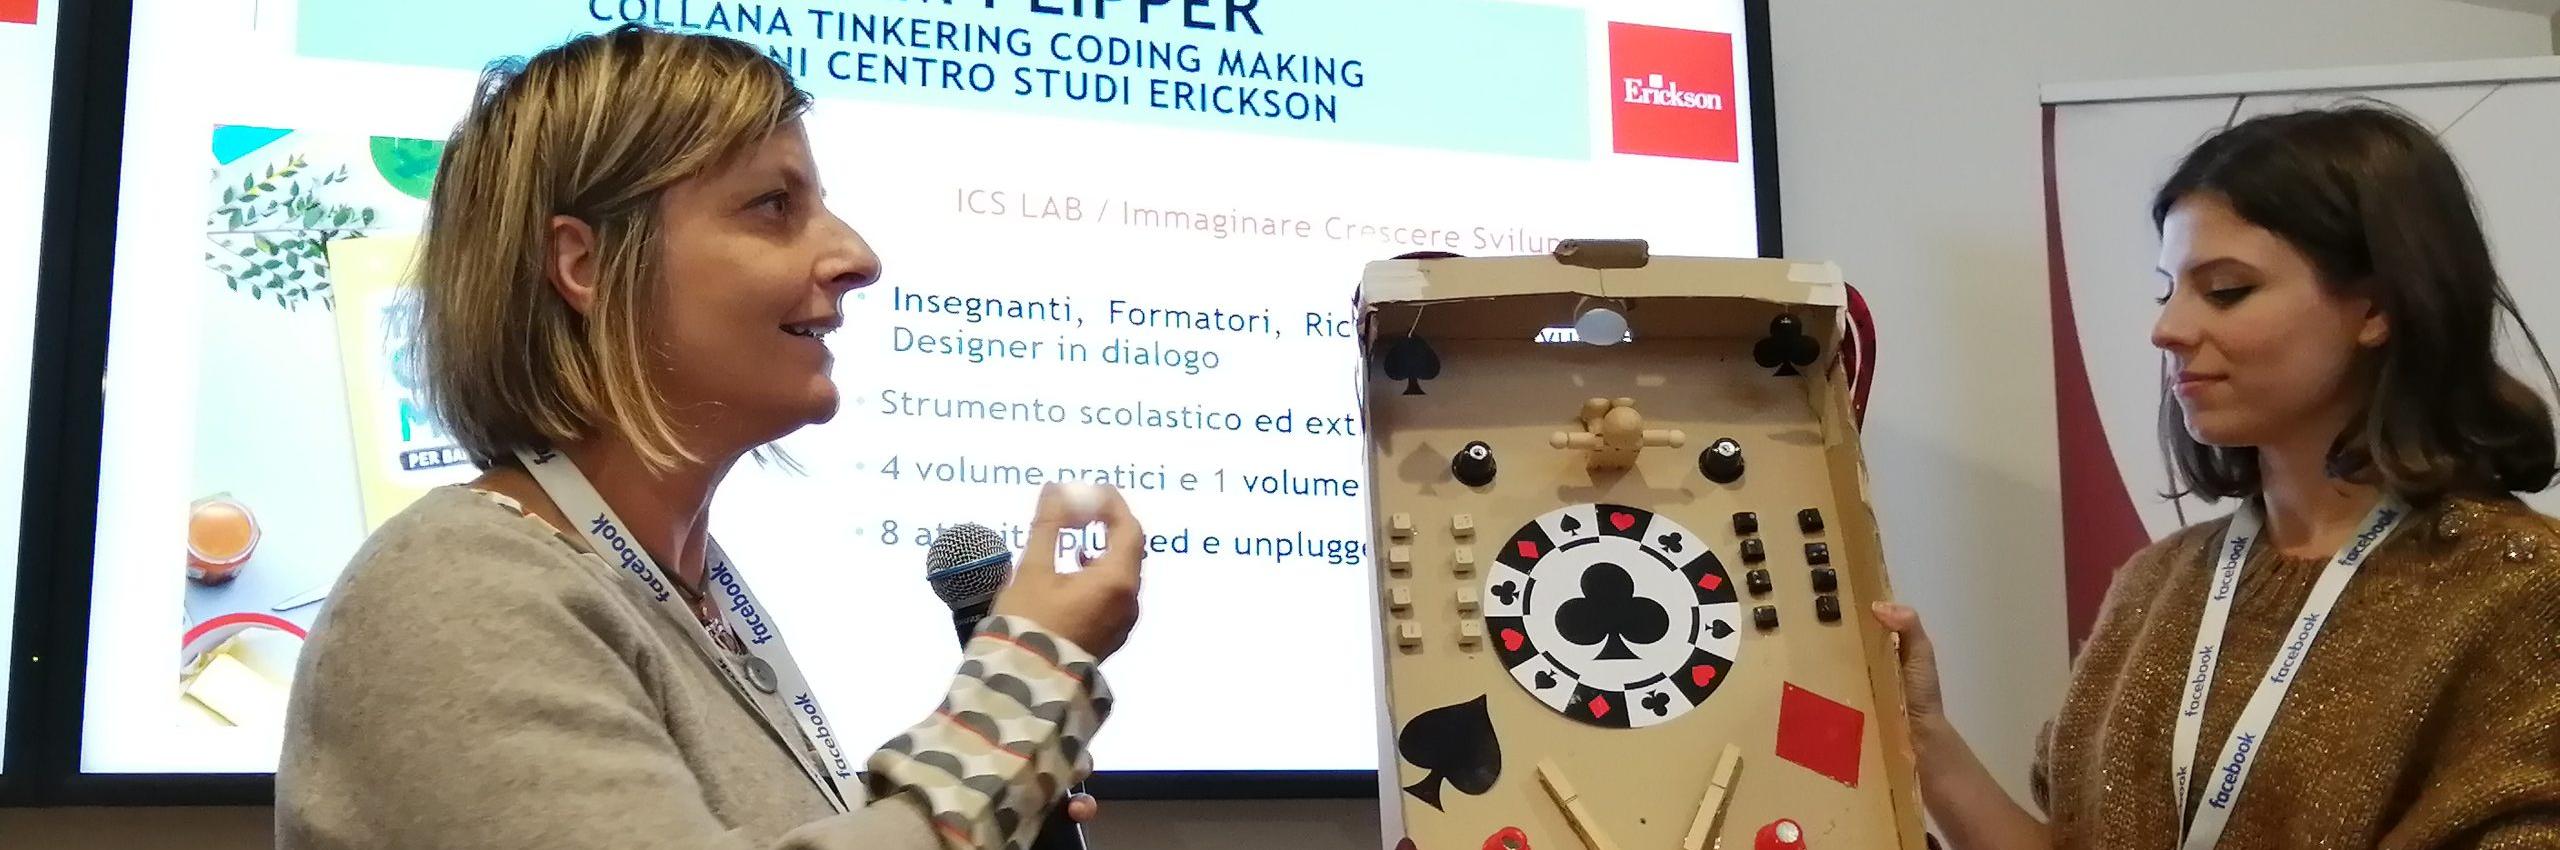 Tinkering coding making